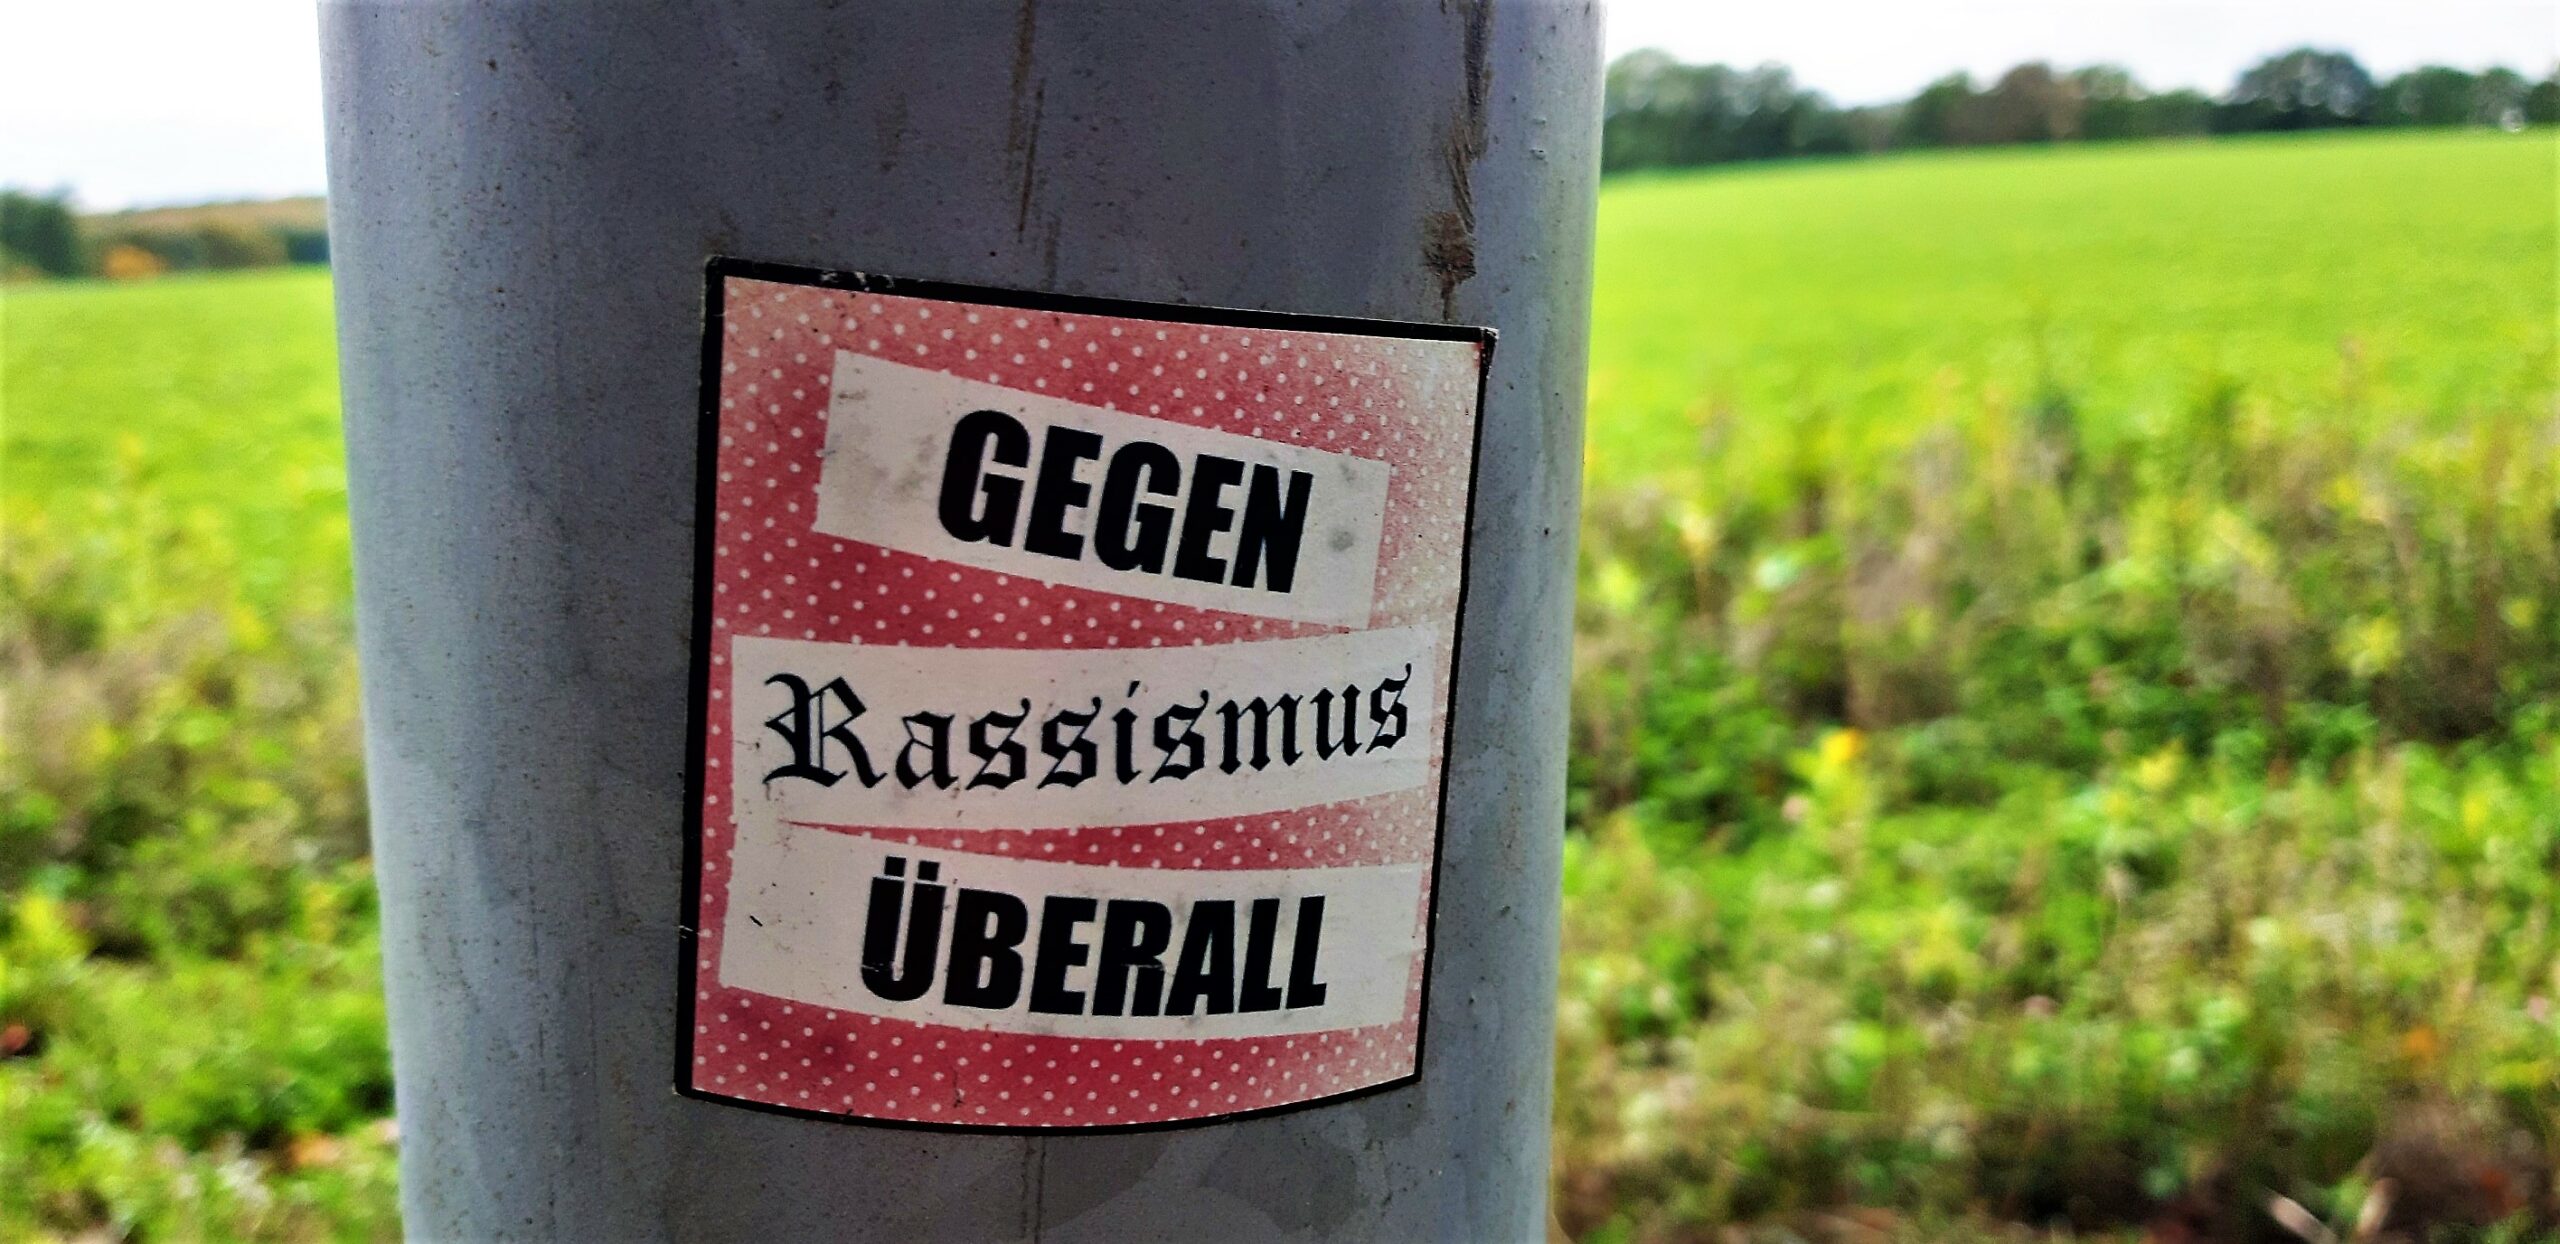 Grünen-Ratsherr in NRW täuscht rechtsextreme Hetzjagd gegen sich vor – Partei „fassungslos und entsetzt“